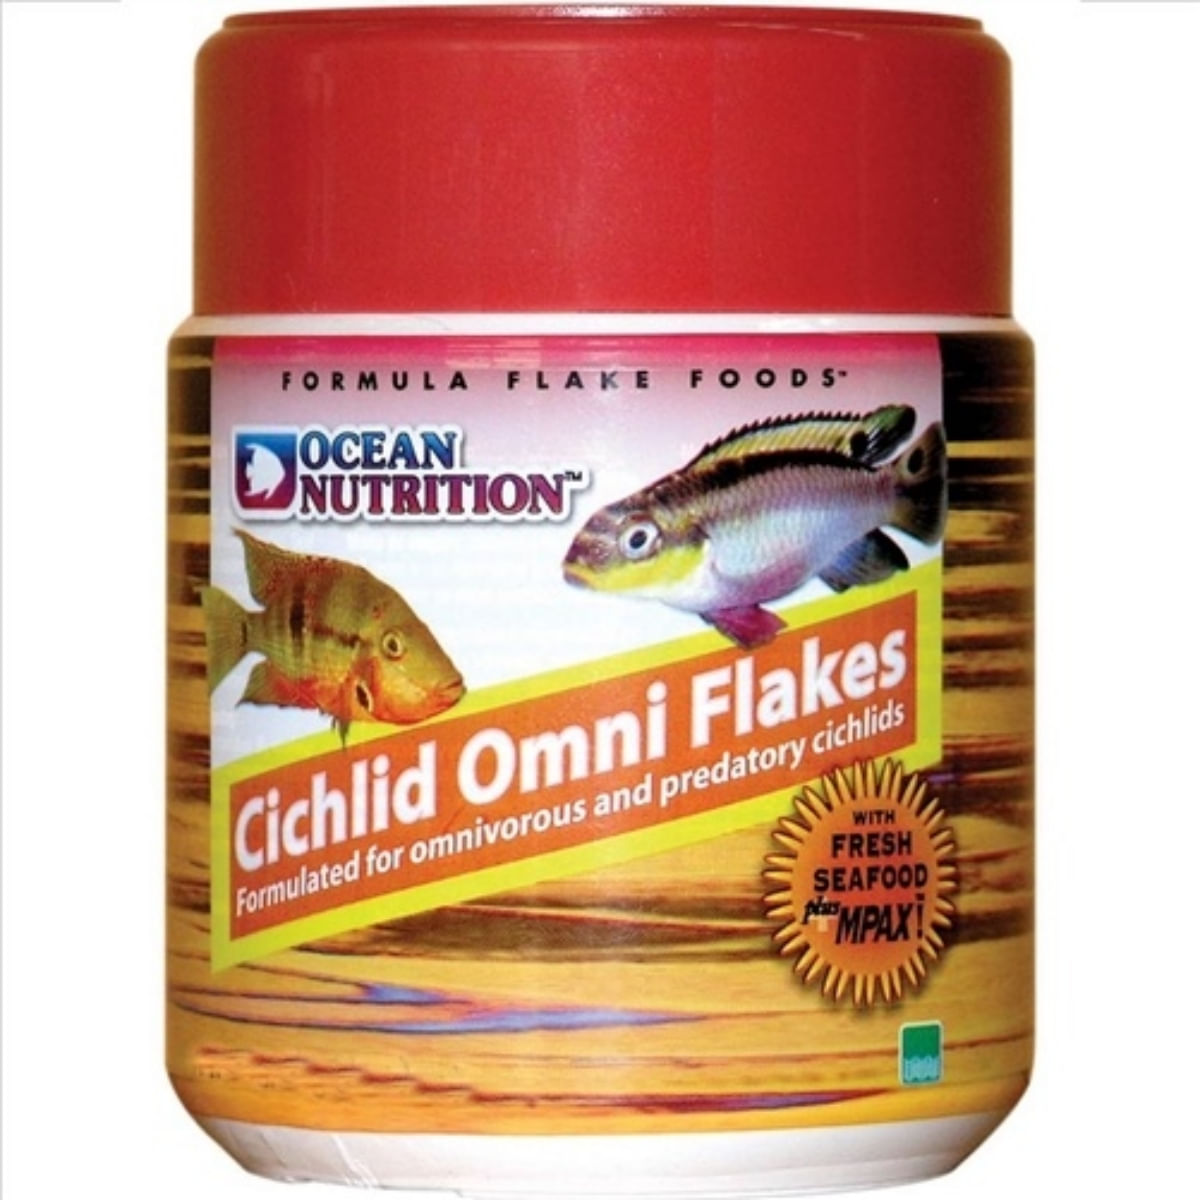 OCEAN NUTRITION Cichlid Omni Flakes, 34g 34g